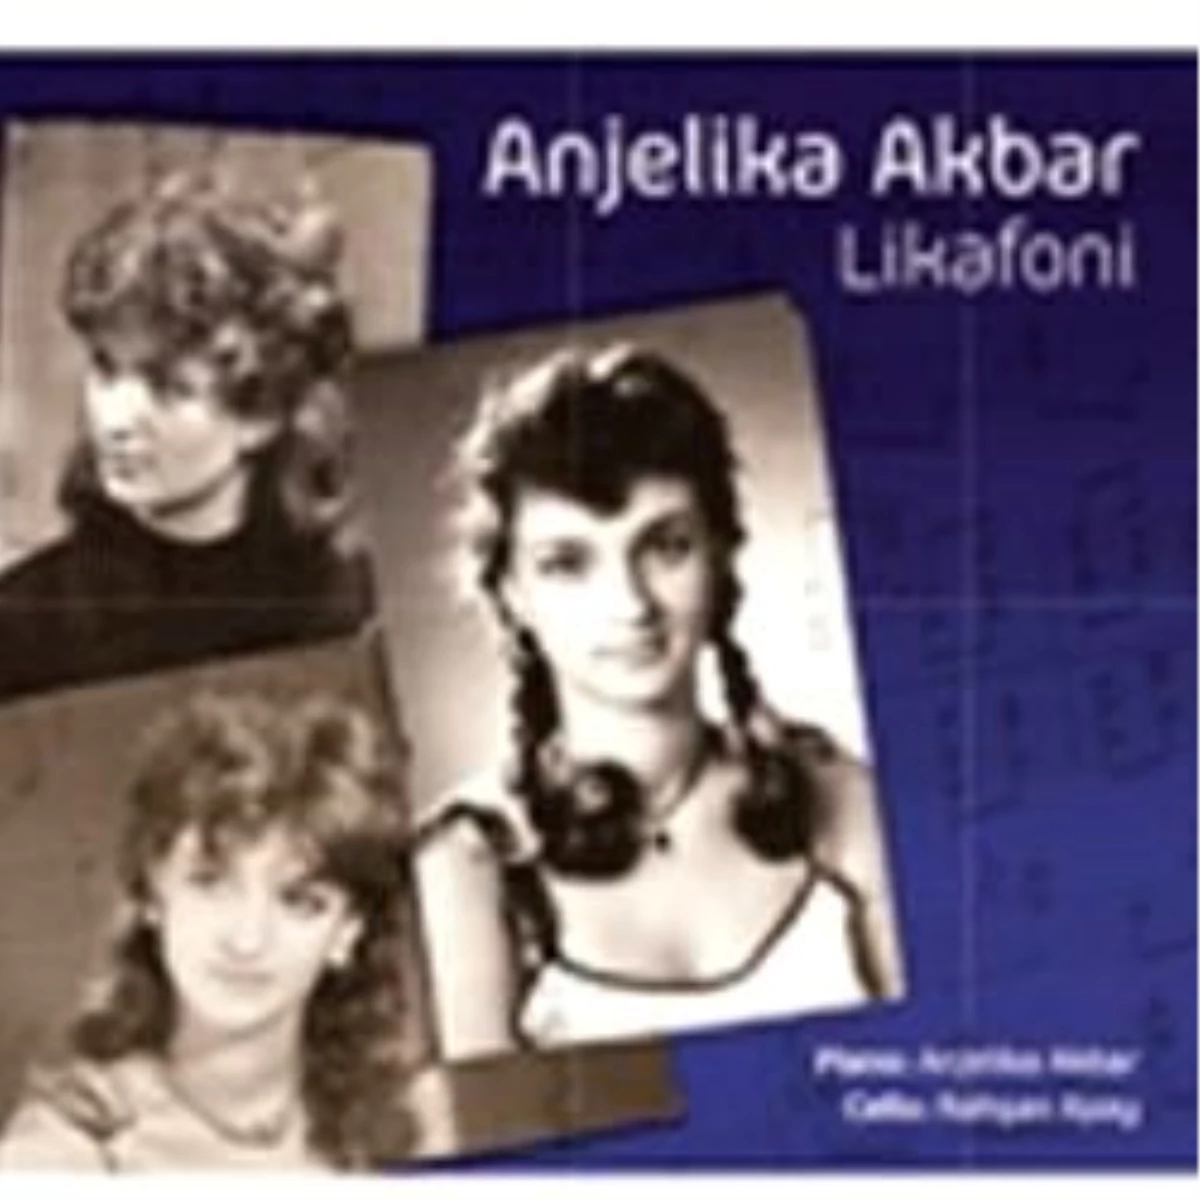 Anjelika Akbar’ın Türkiye’de Çıkardığı 12. Albümü "Likafoni" Çıktı!
